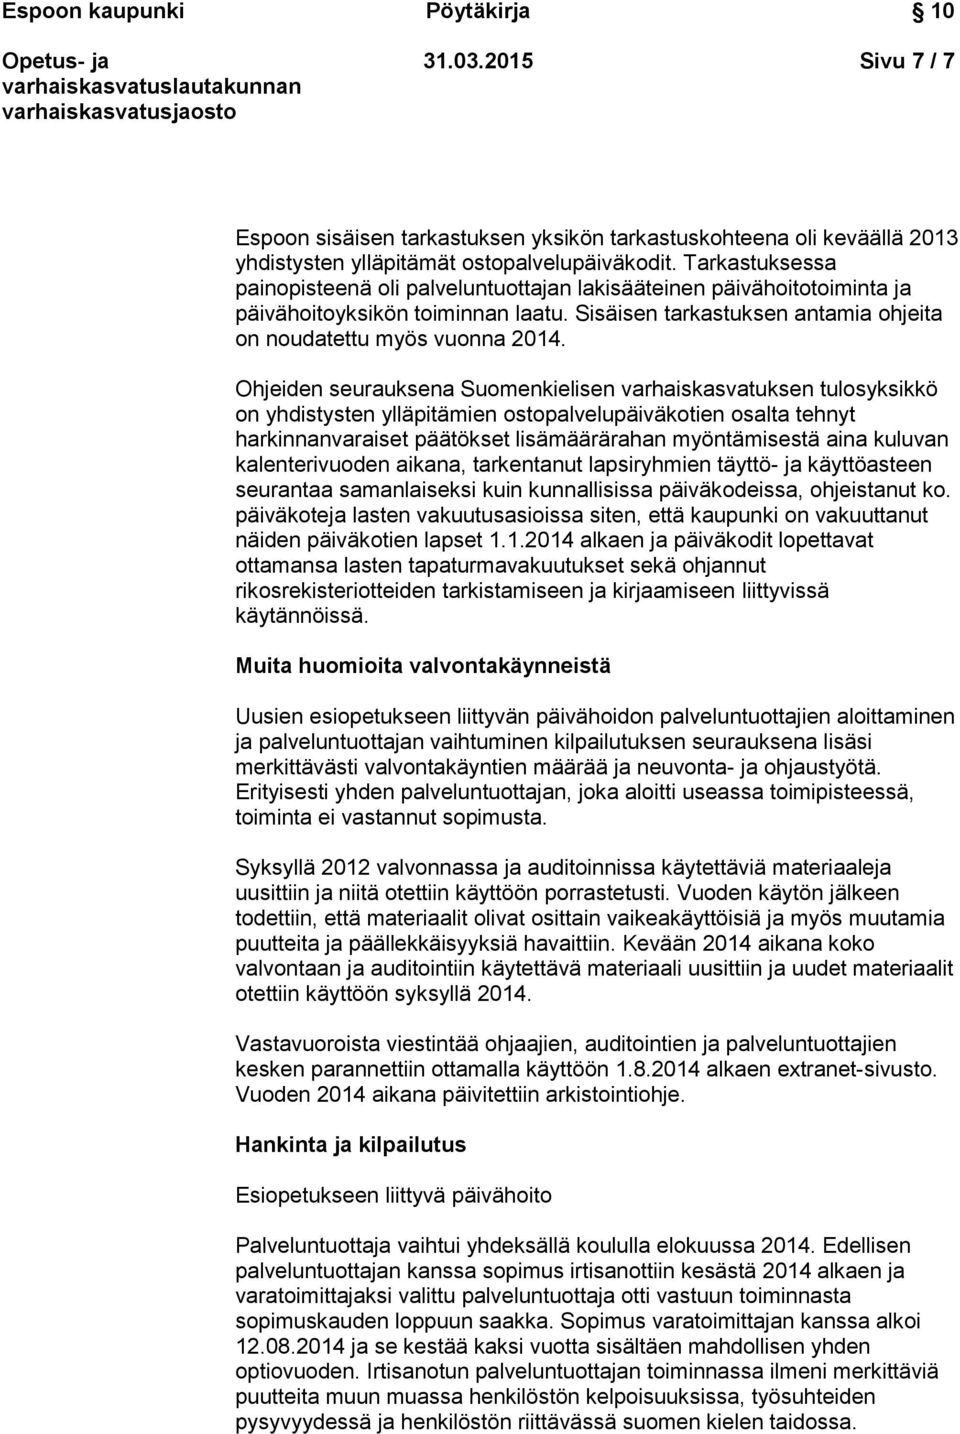 Ohjeiden seurauksena Suomenkielisen varhaiskasvatuksen tulosyksikkö on yhdistysten ylläpitämien ostopalvelupäiväkotien osalta tehnyt harkinnanvaraiset päätökset lisämäärärahan myöntämisestä aina